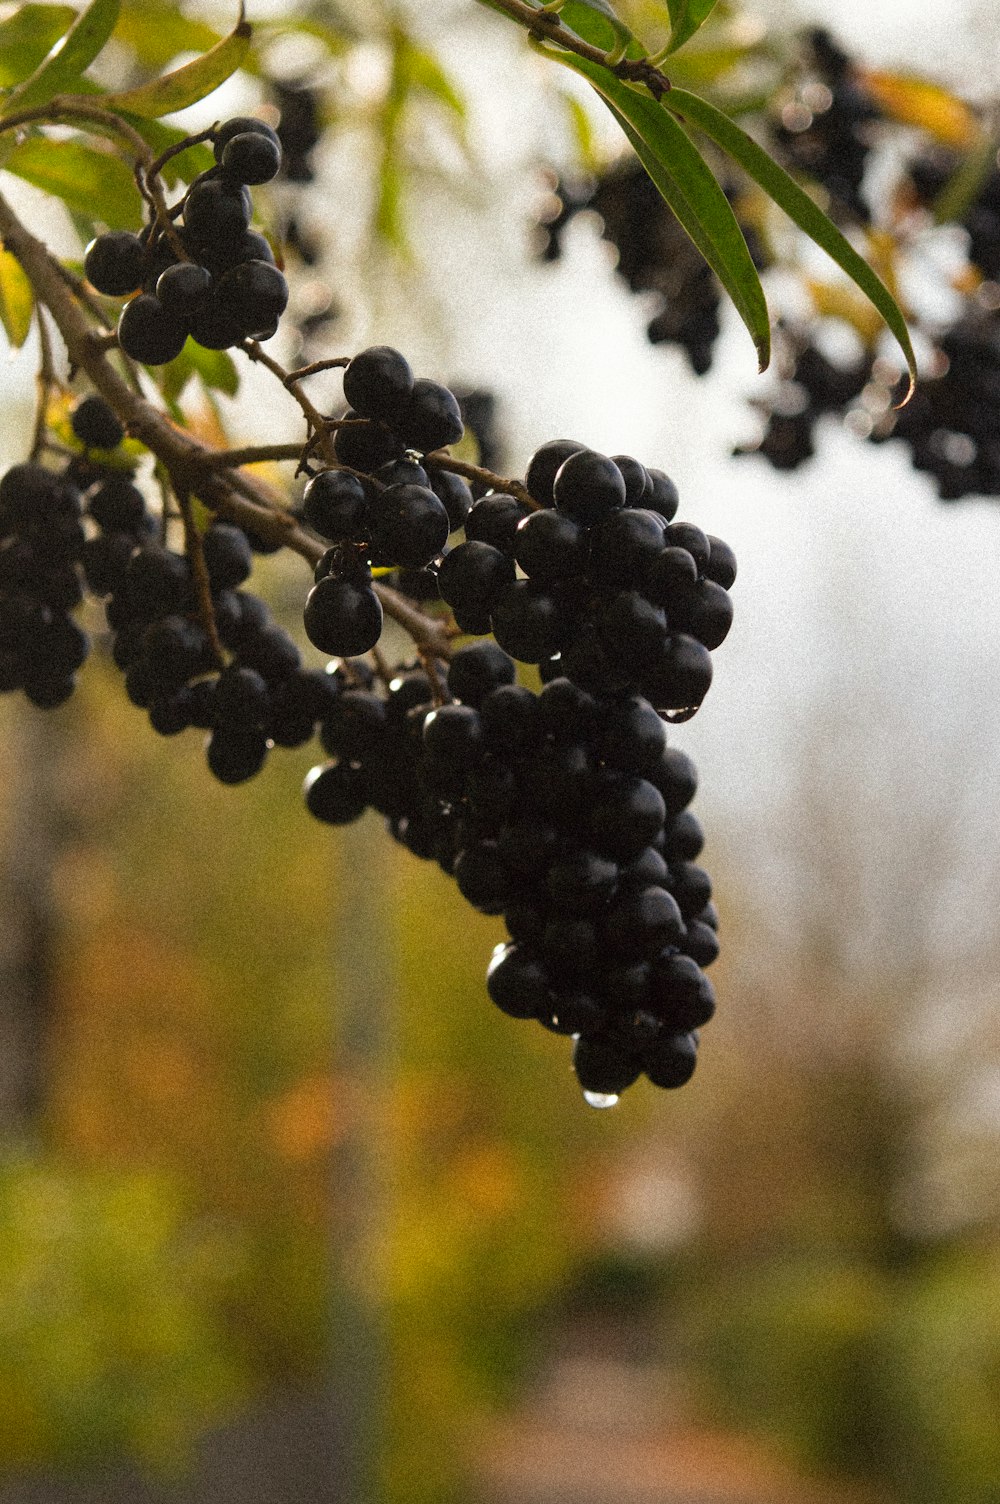 a close up of a black berry